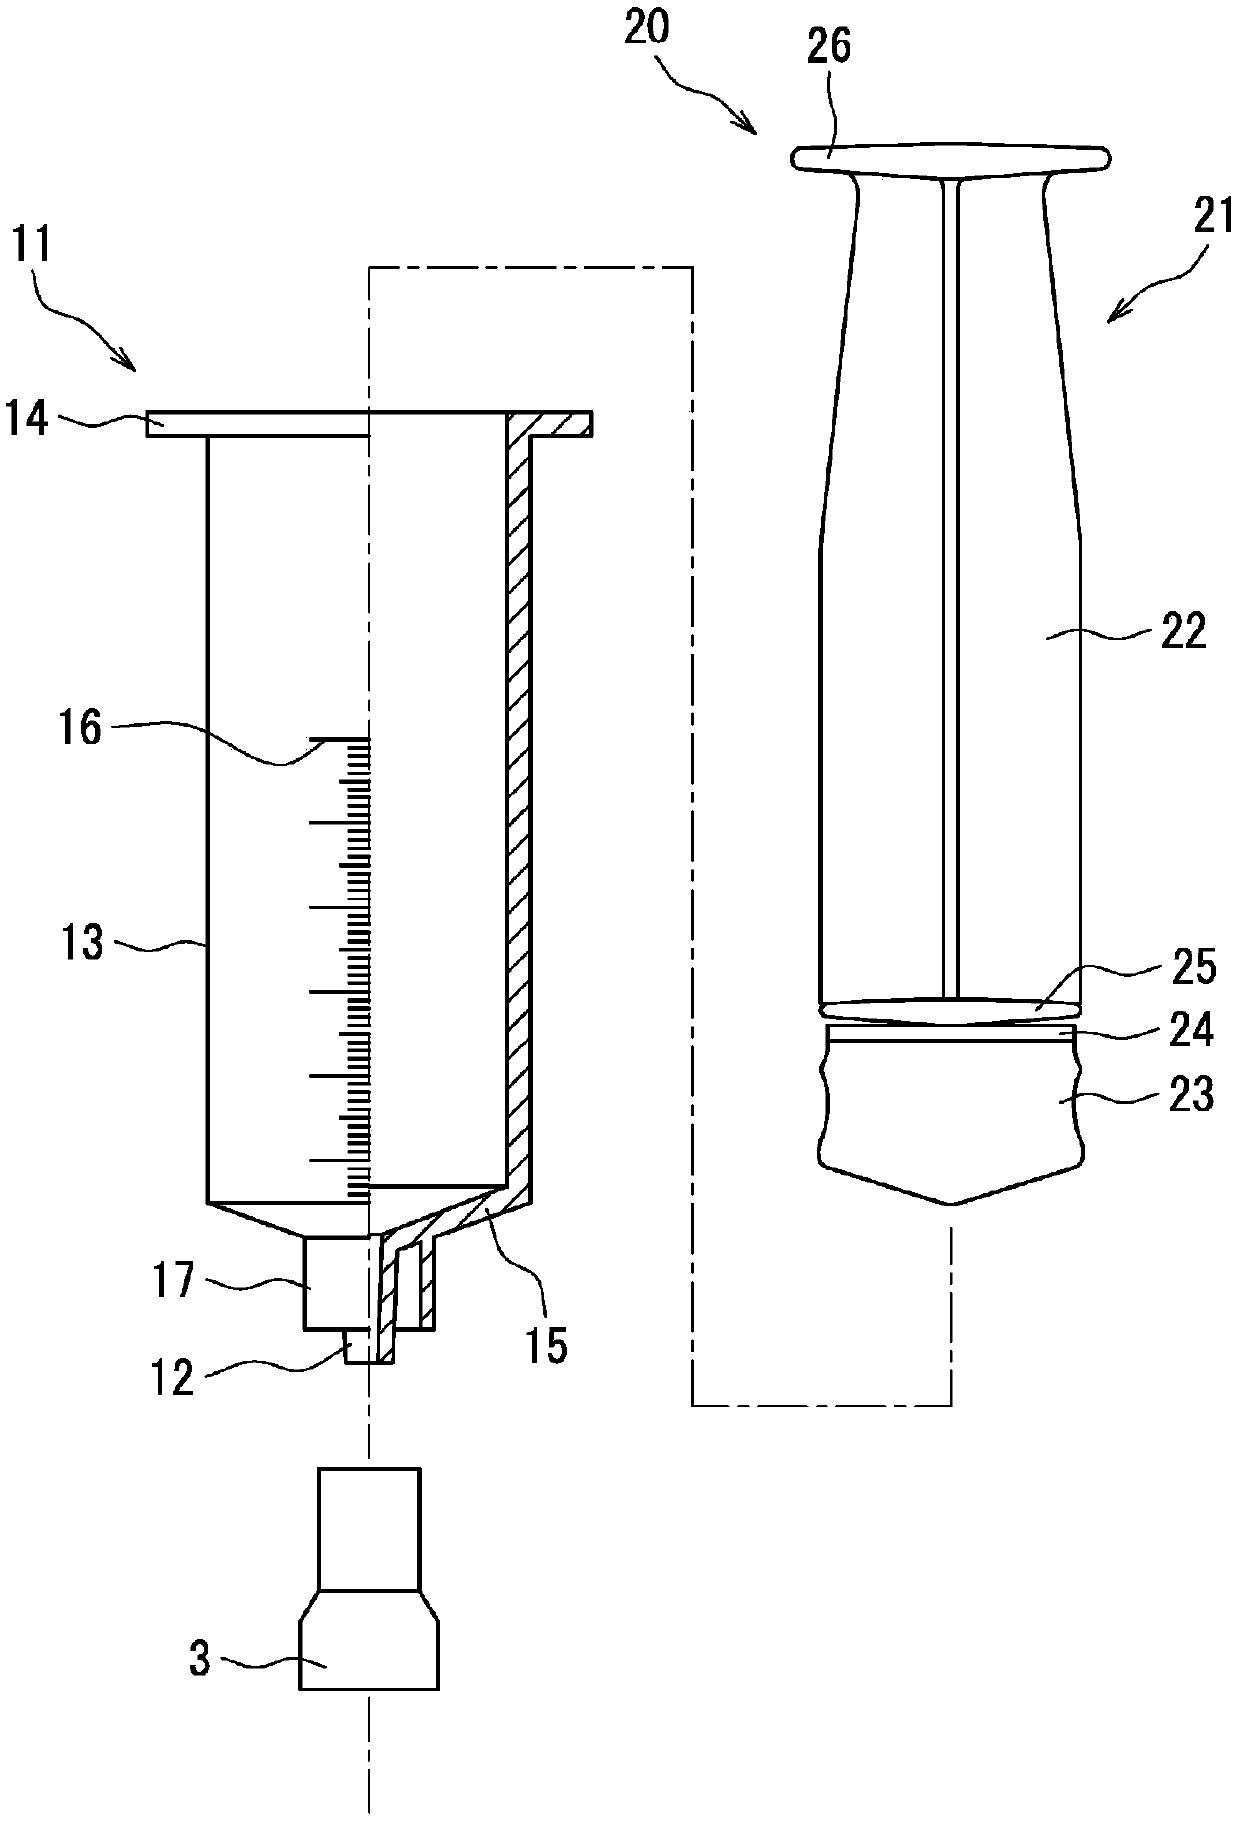 Syringe plunger, method of manufacturing same, and medical syringe